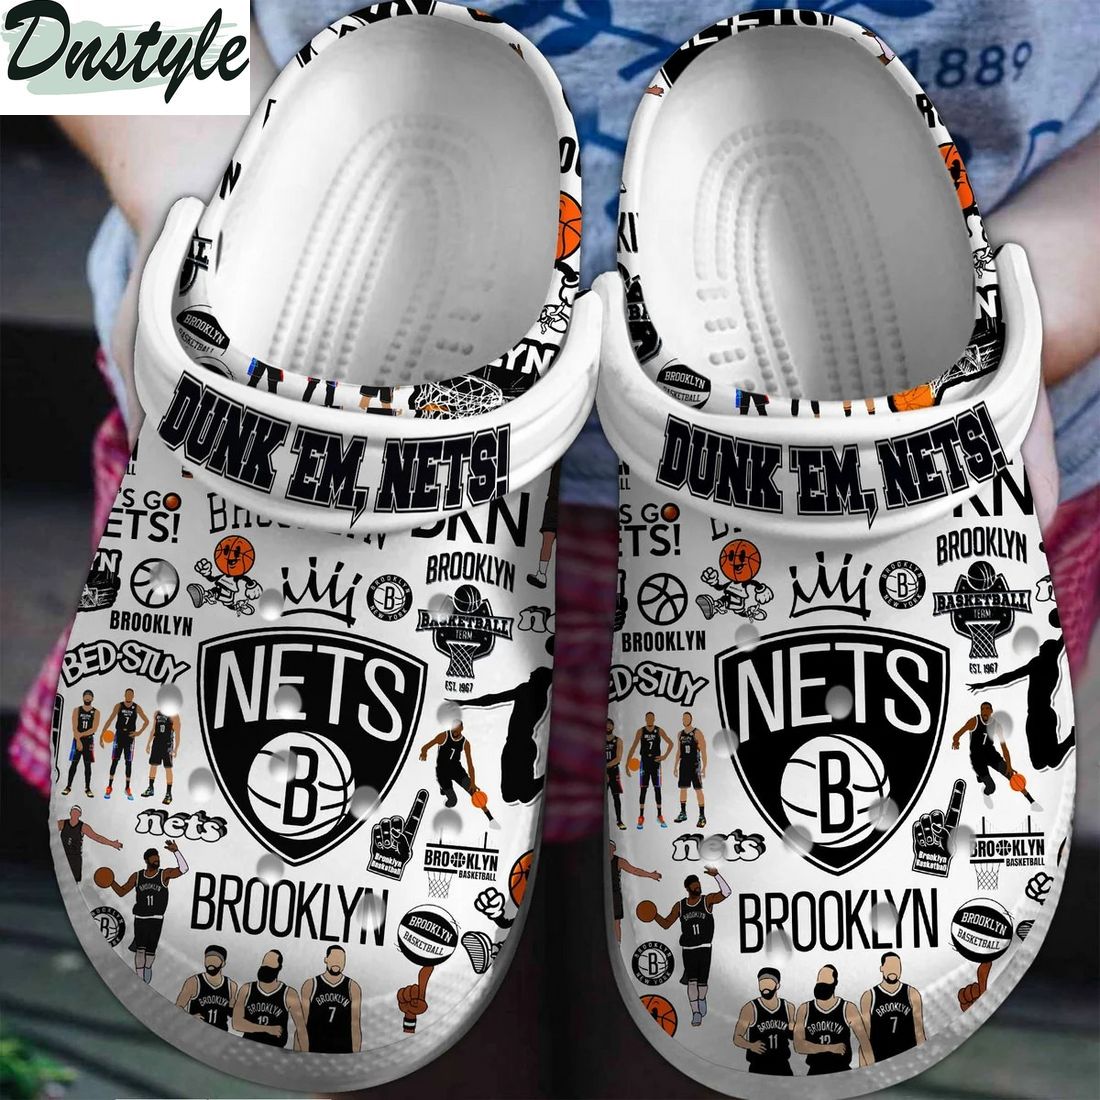 Brooklyn Nets NBA Crocs Crocband Clogs Shoes